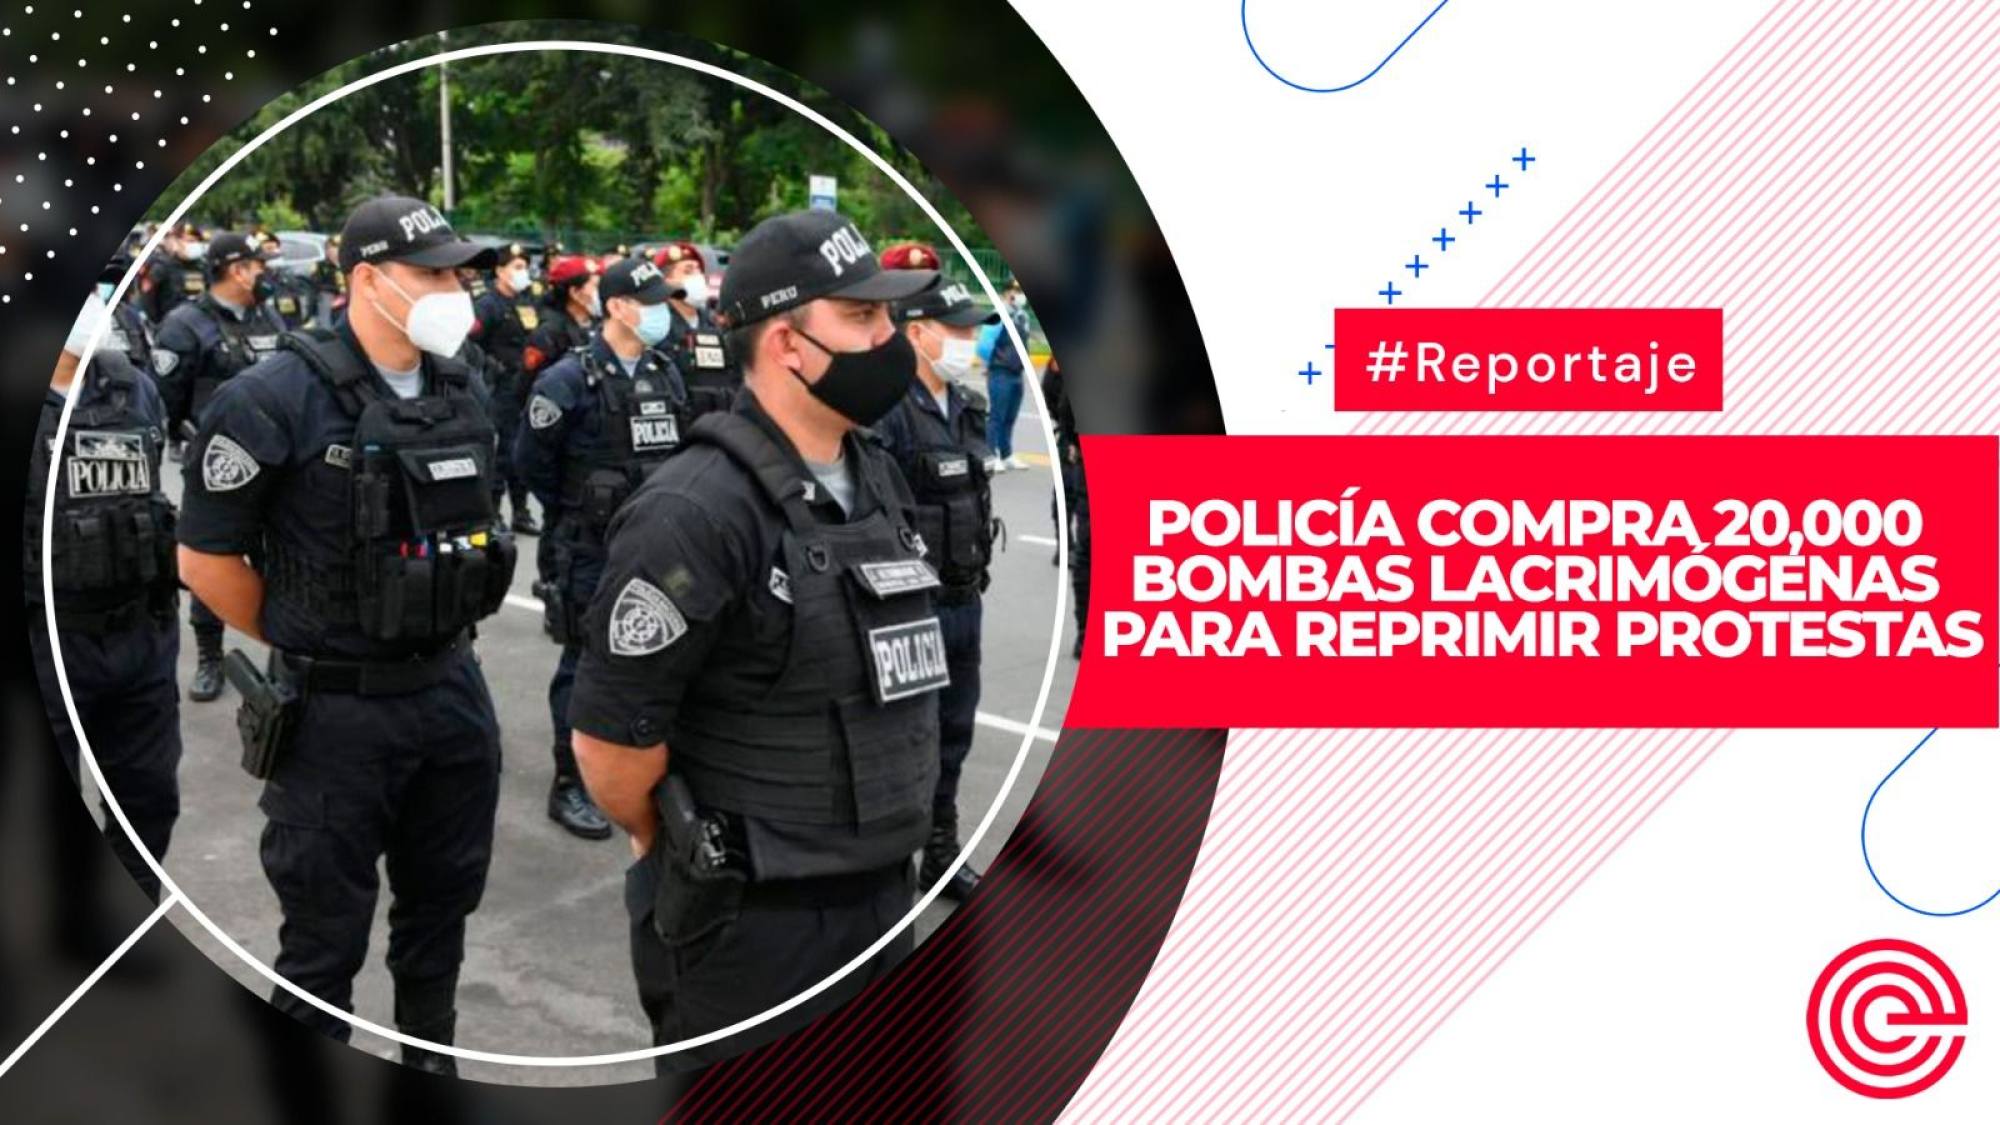 Policía compra 20,000 bombas lacrimógenas para reprimir protestas, Epicentro TV